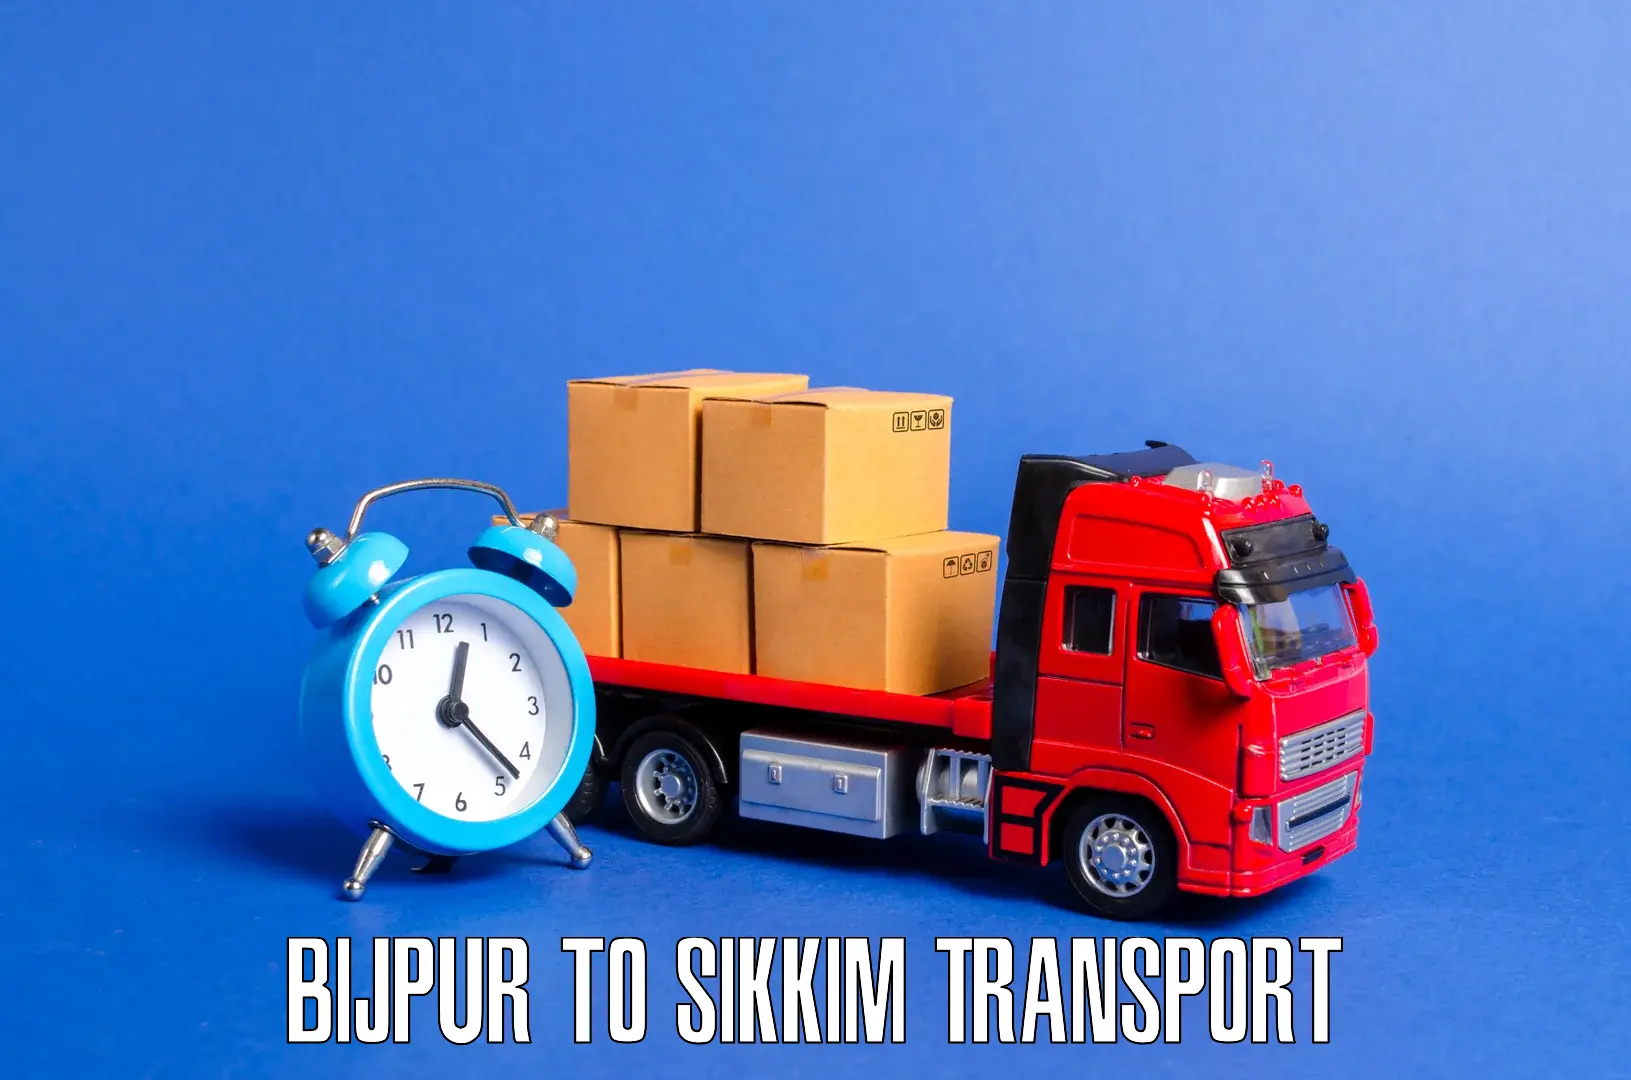 Transport in sharing Bijpur to Mangan